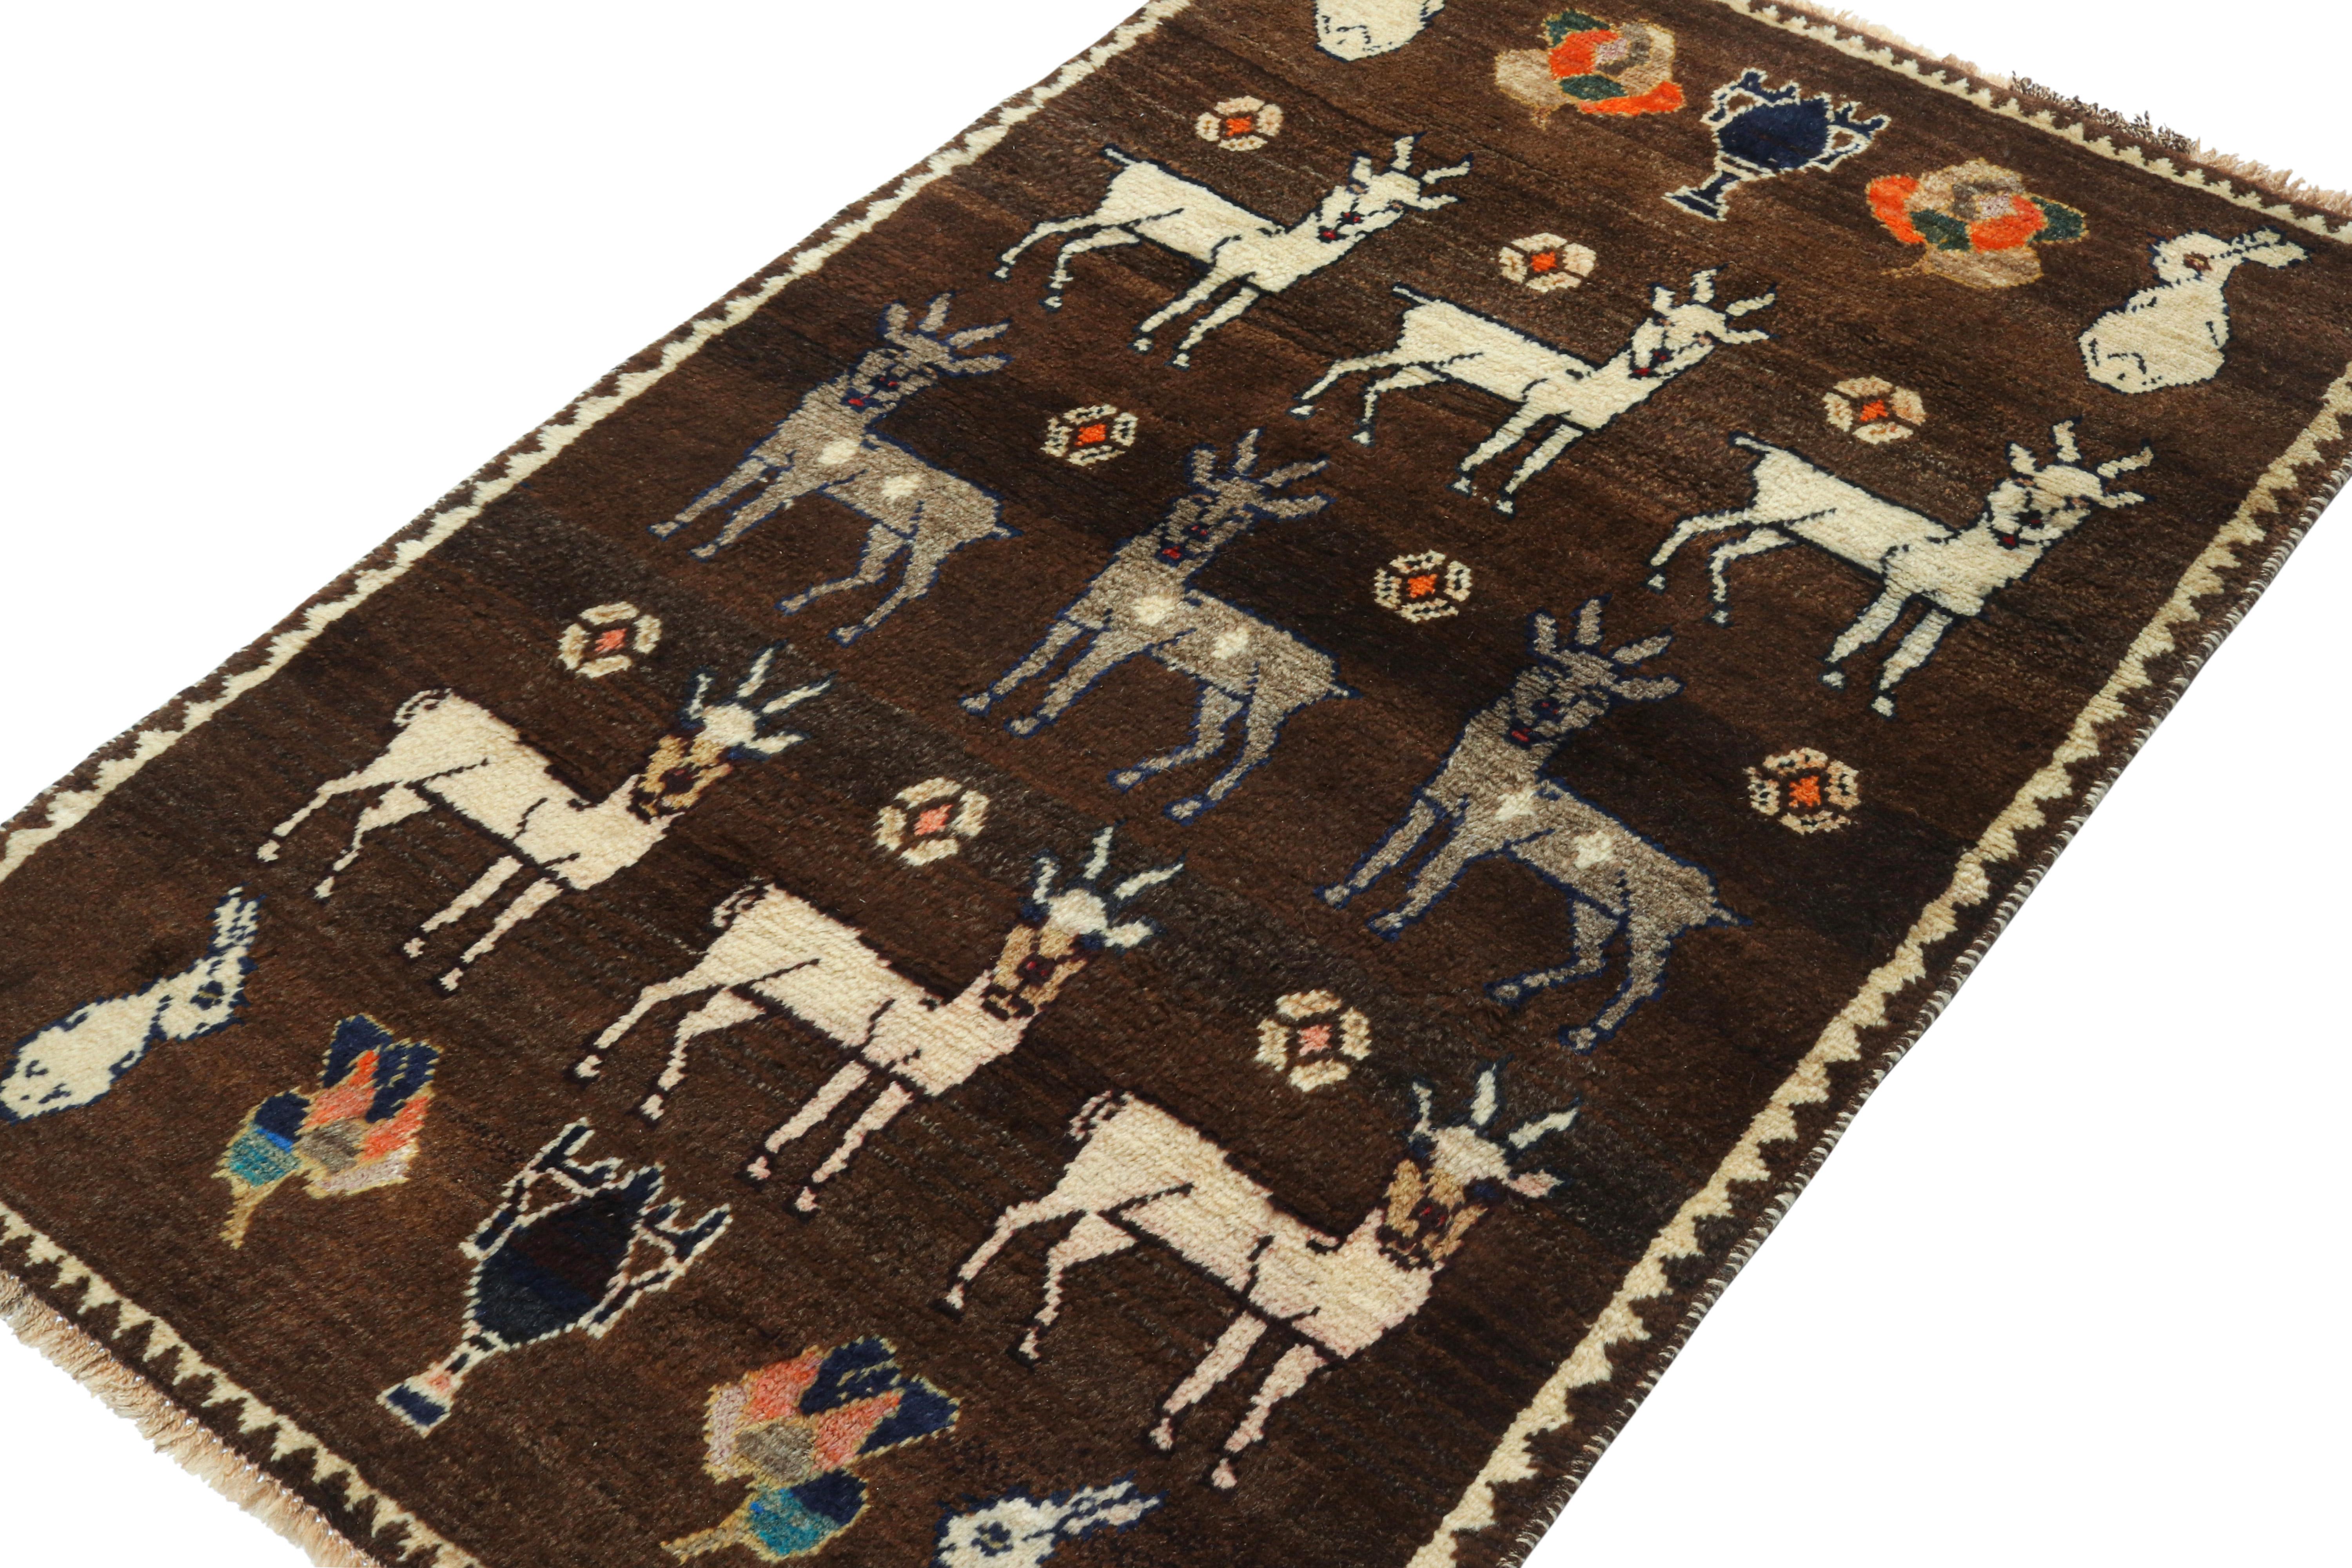 Dieser 3x5 Gabbeh-Perserteppich im Vintage-Stil gehört zu den neuesten Beiträgen in den seltenen Stammesausstellungen von Rug & Kilim. Handgeknüpft aus Wolle, ca. 1950-1960.

Über das Design:

Diese Stammesherkunft ist einer der primitivsten und